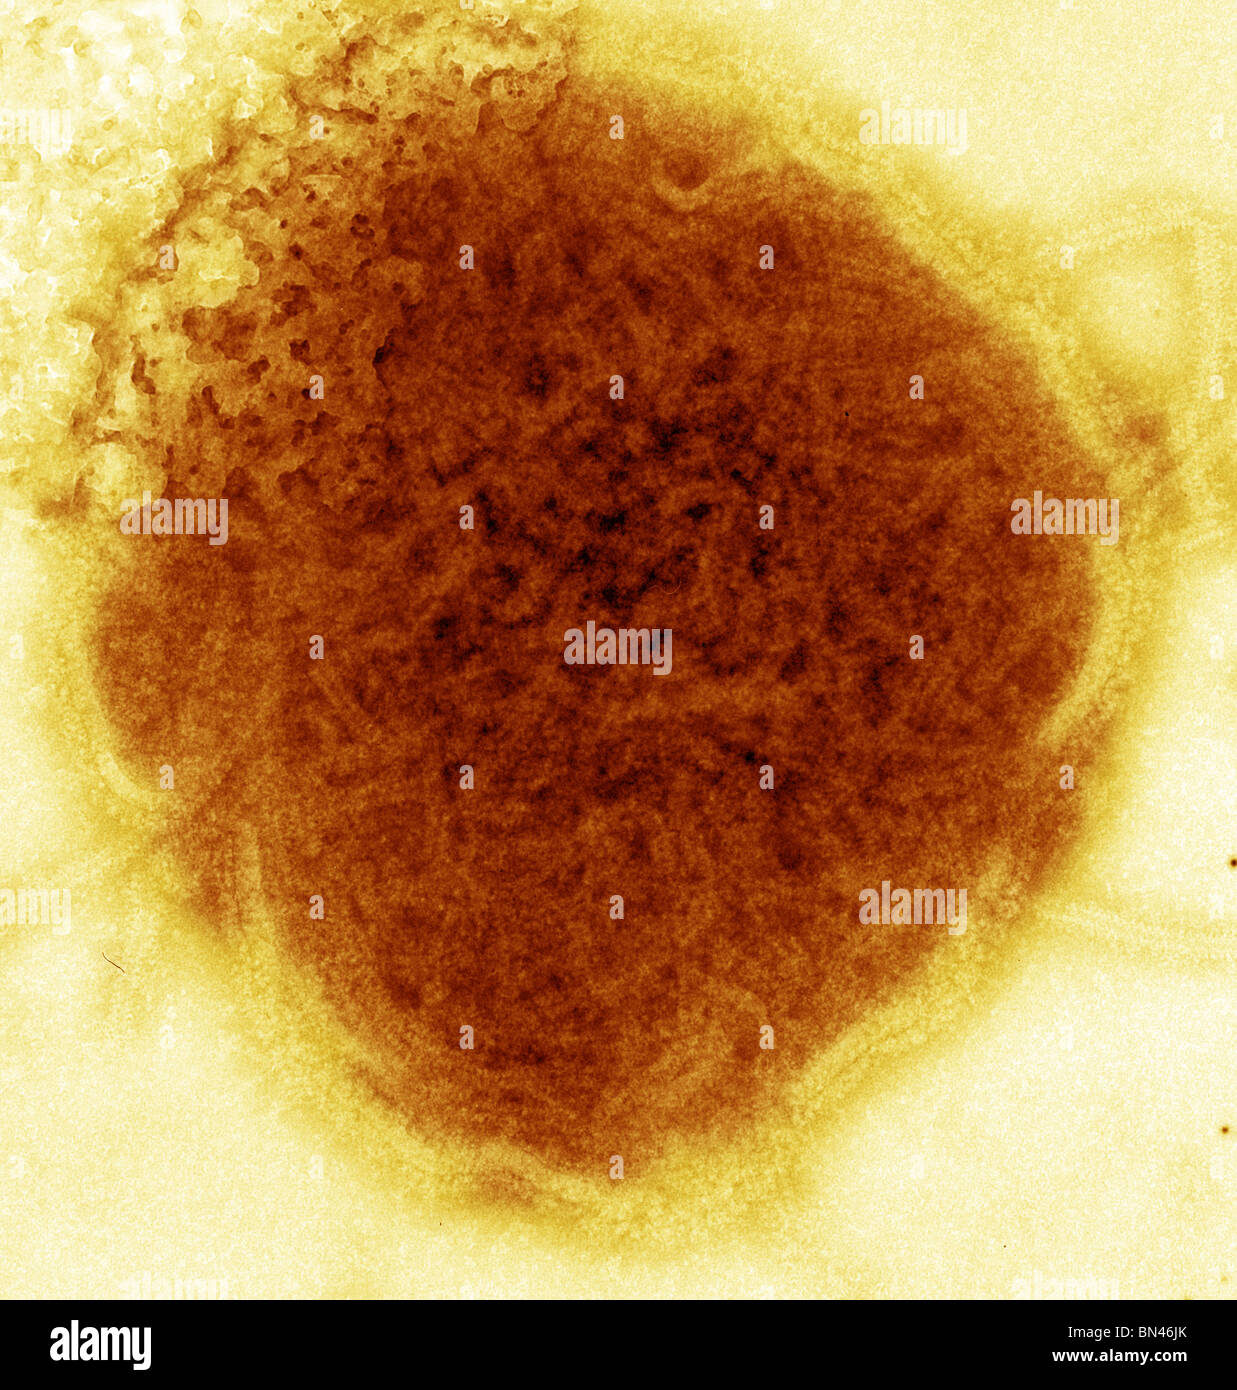 Colorate negativo microscopio elettronico a trasmissione (TEM) del virus della parotite Foto Stock